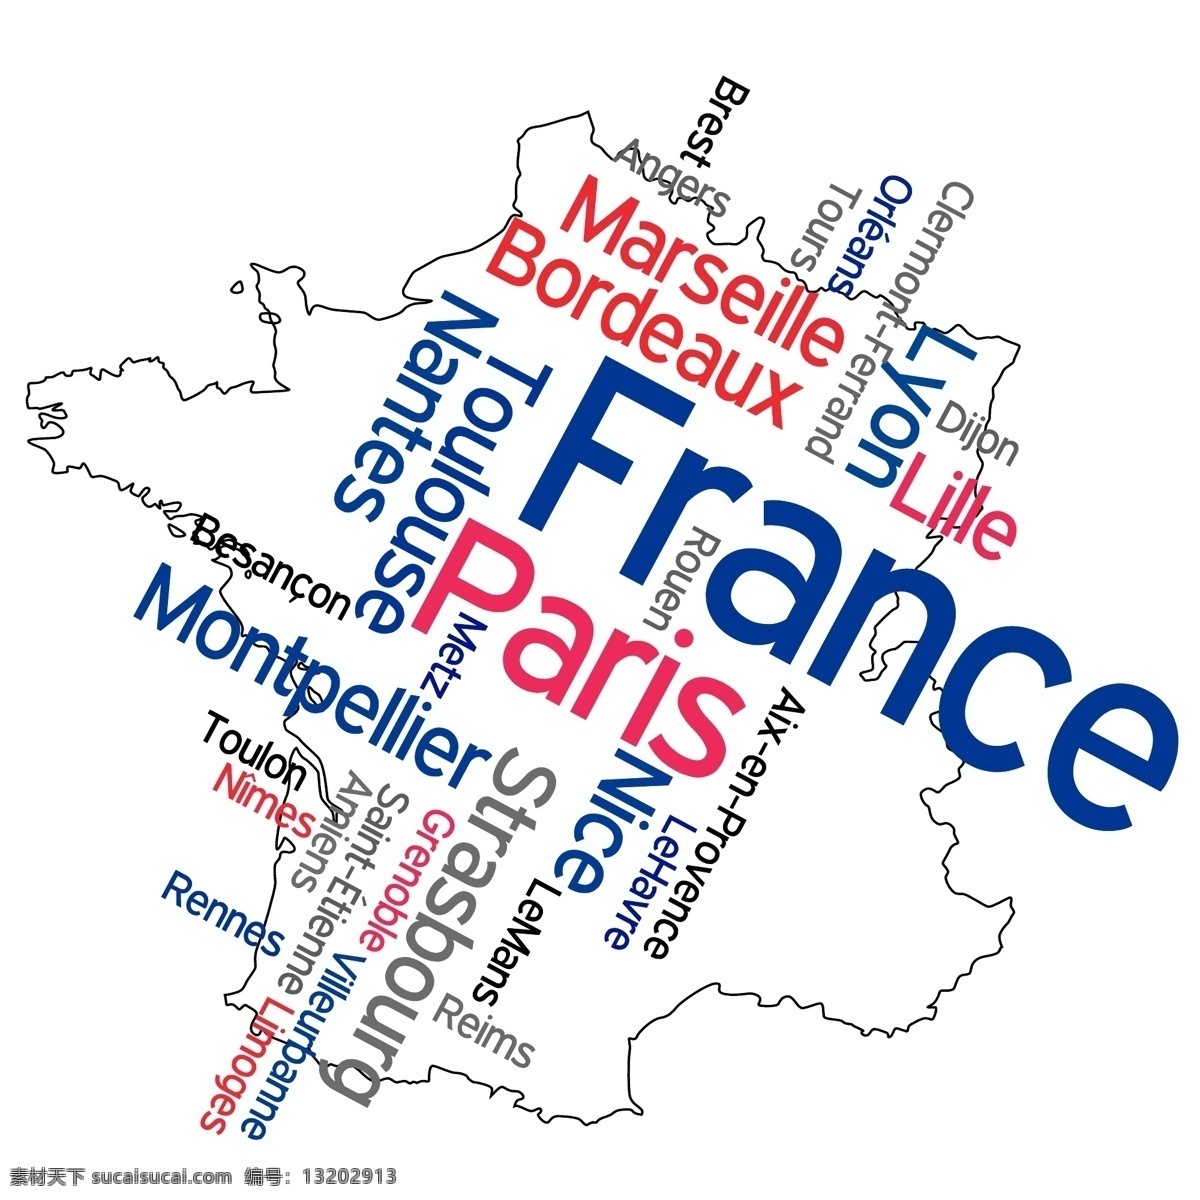 地形轮廓图 法国轮廓图 法国地名 背景 图纸 图样